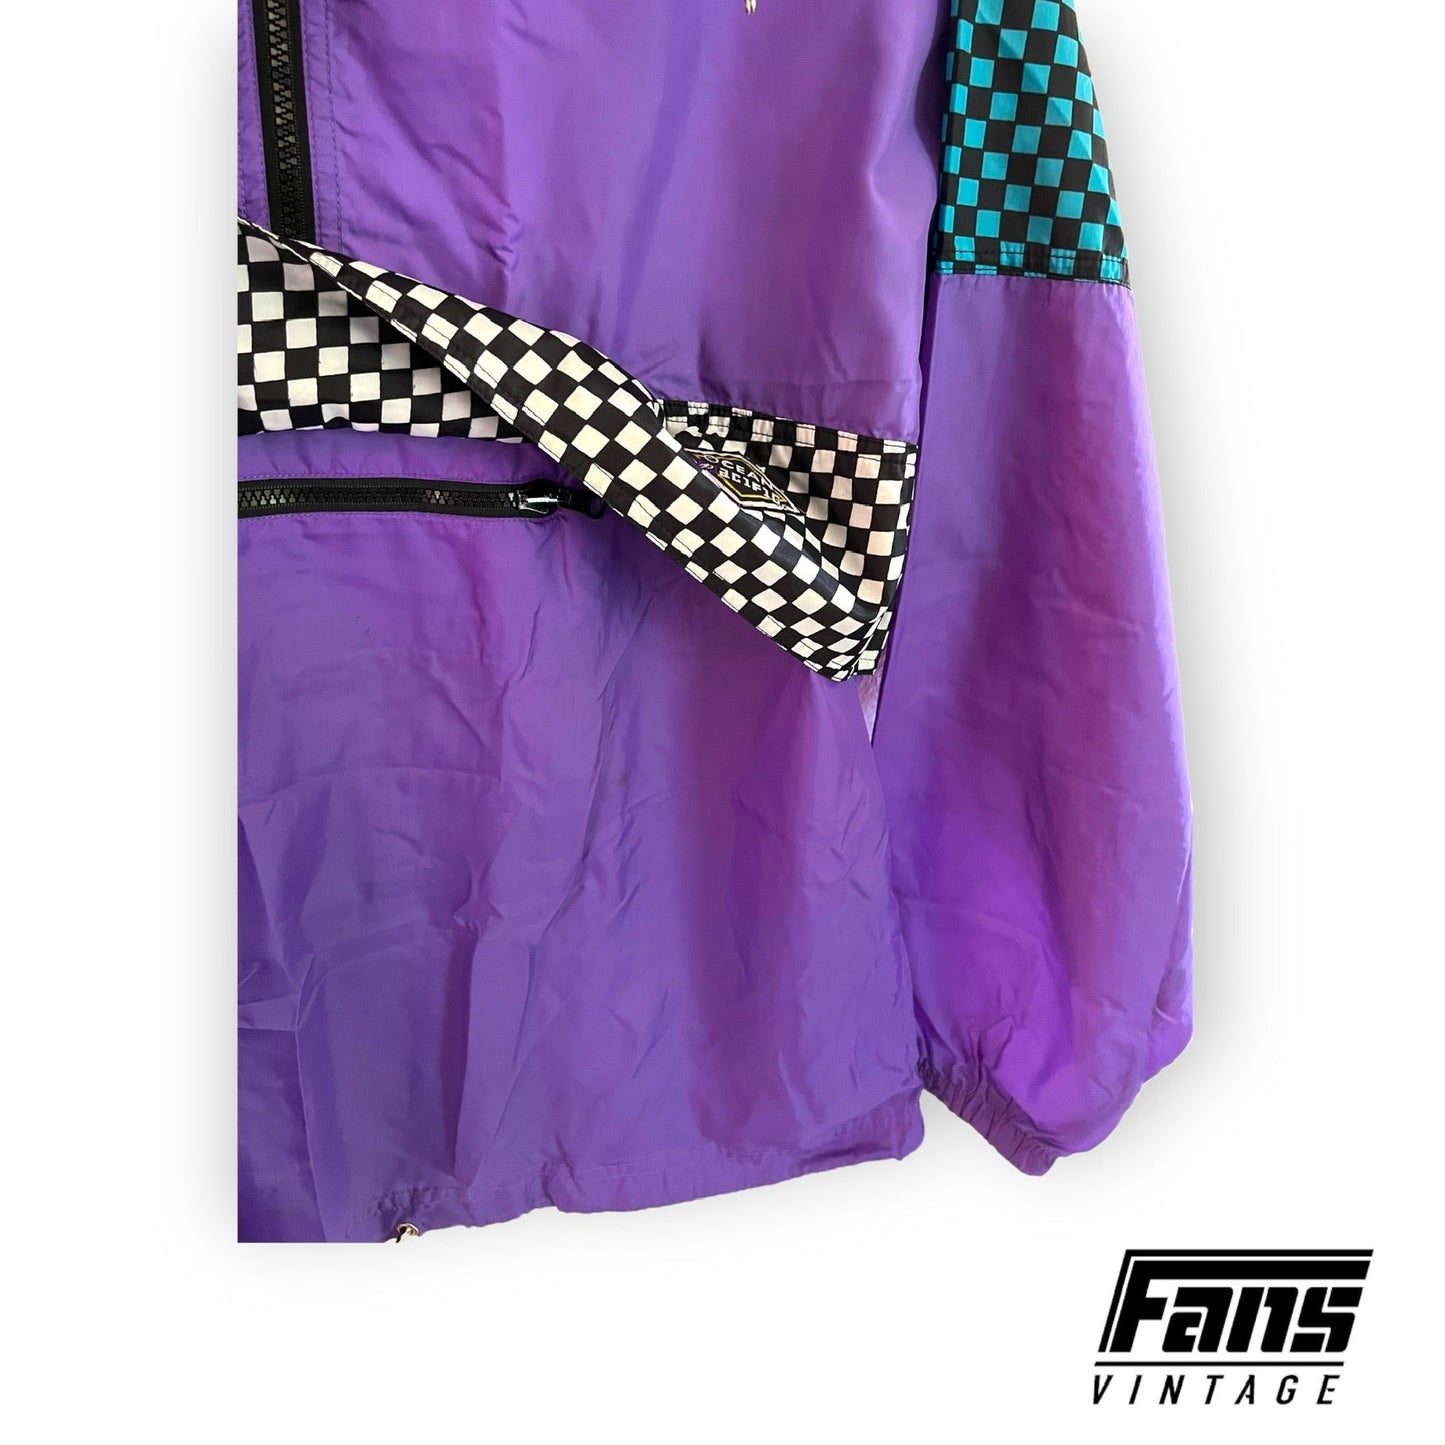 90s Vintage Purple Ocean Pacific Checkered Anorak Windbreaker Jacket